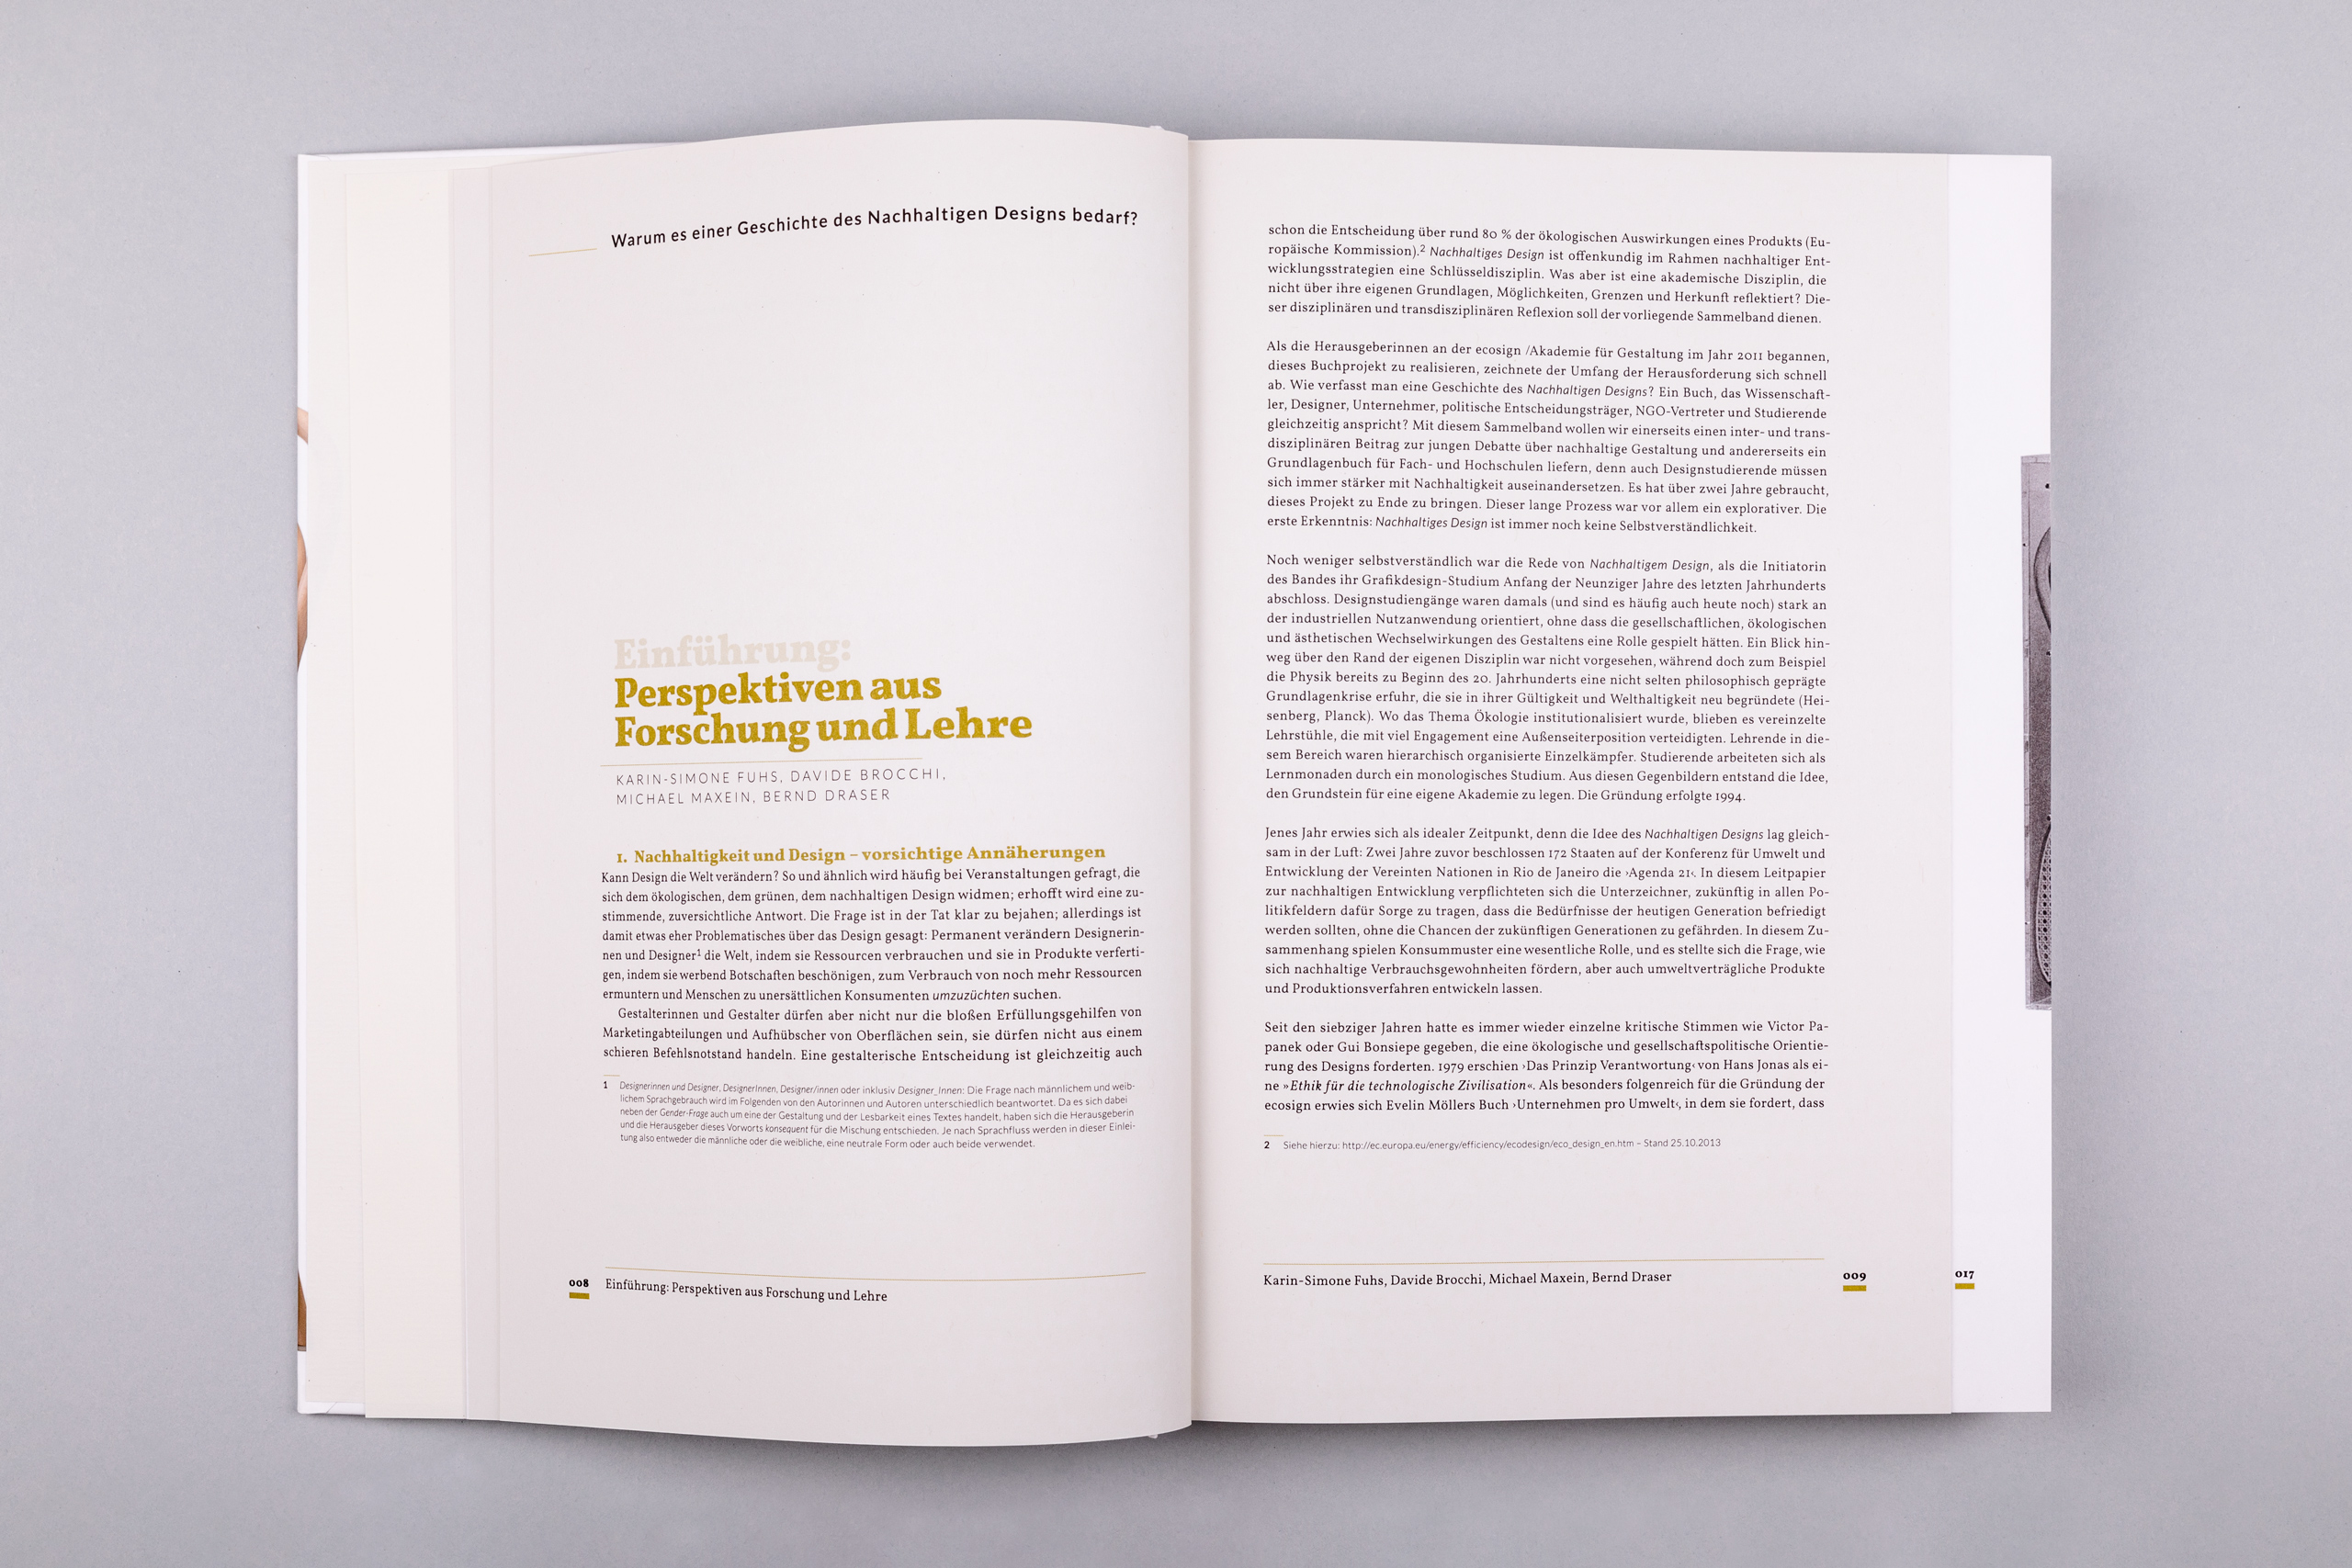 Büro Gestalten: Die Geschichte de nachhaltigen Designs (Buch, S. 8–9)